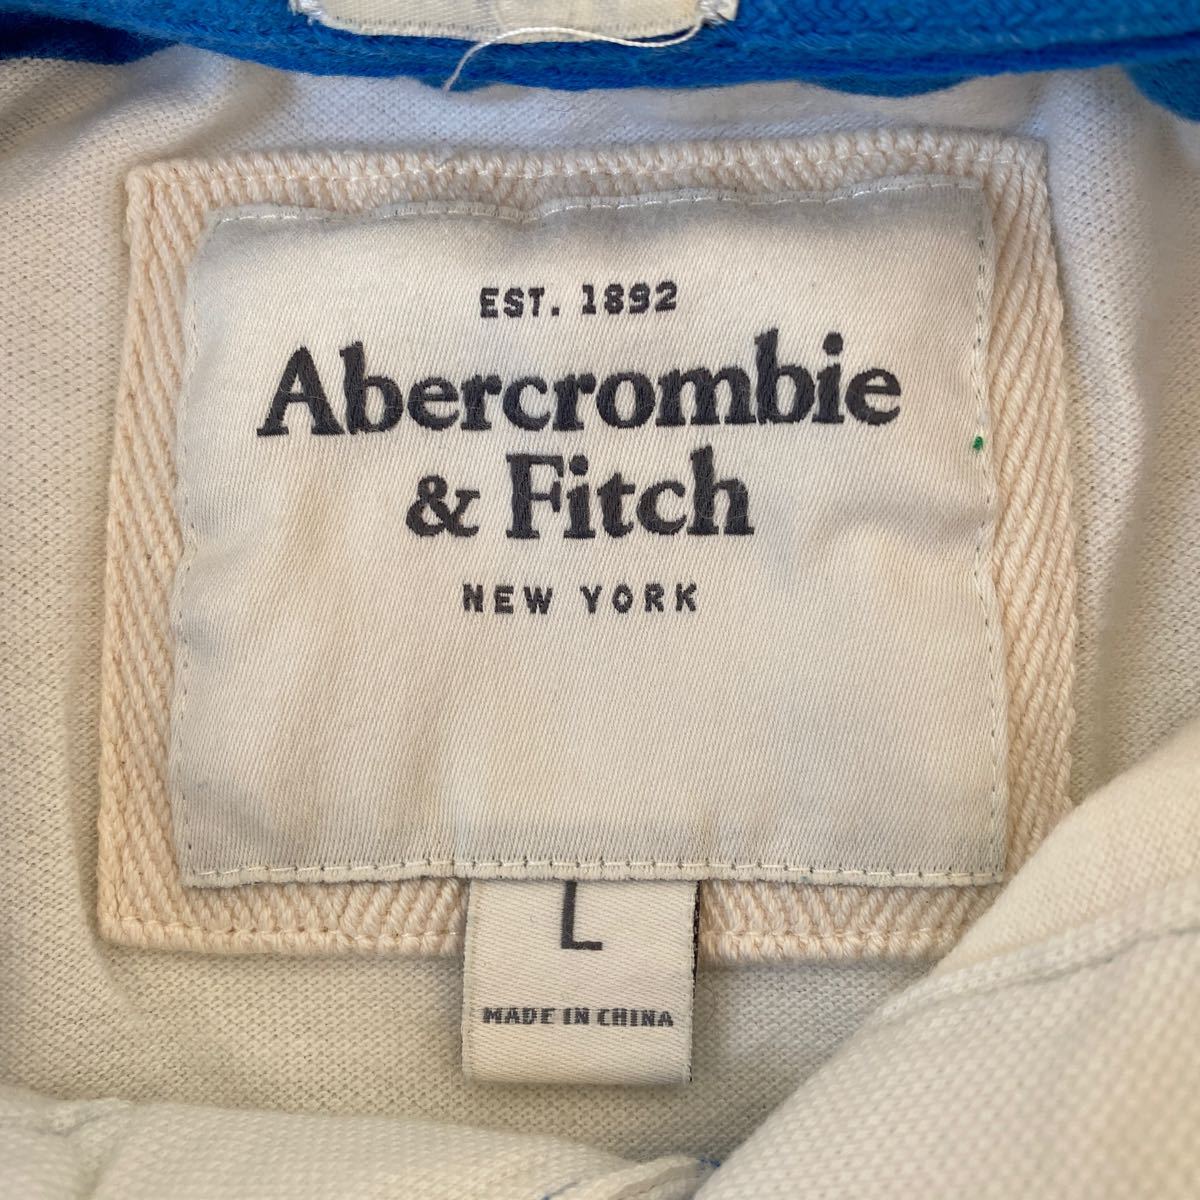 アバクロ Abercrombie&fitch メンズ ポロシャツL中古シミ汚れ色抜有 ロスにて購入本物 2～3回使用後クロゼット保管 ラガーシャツ ボーダー_画像4